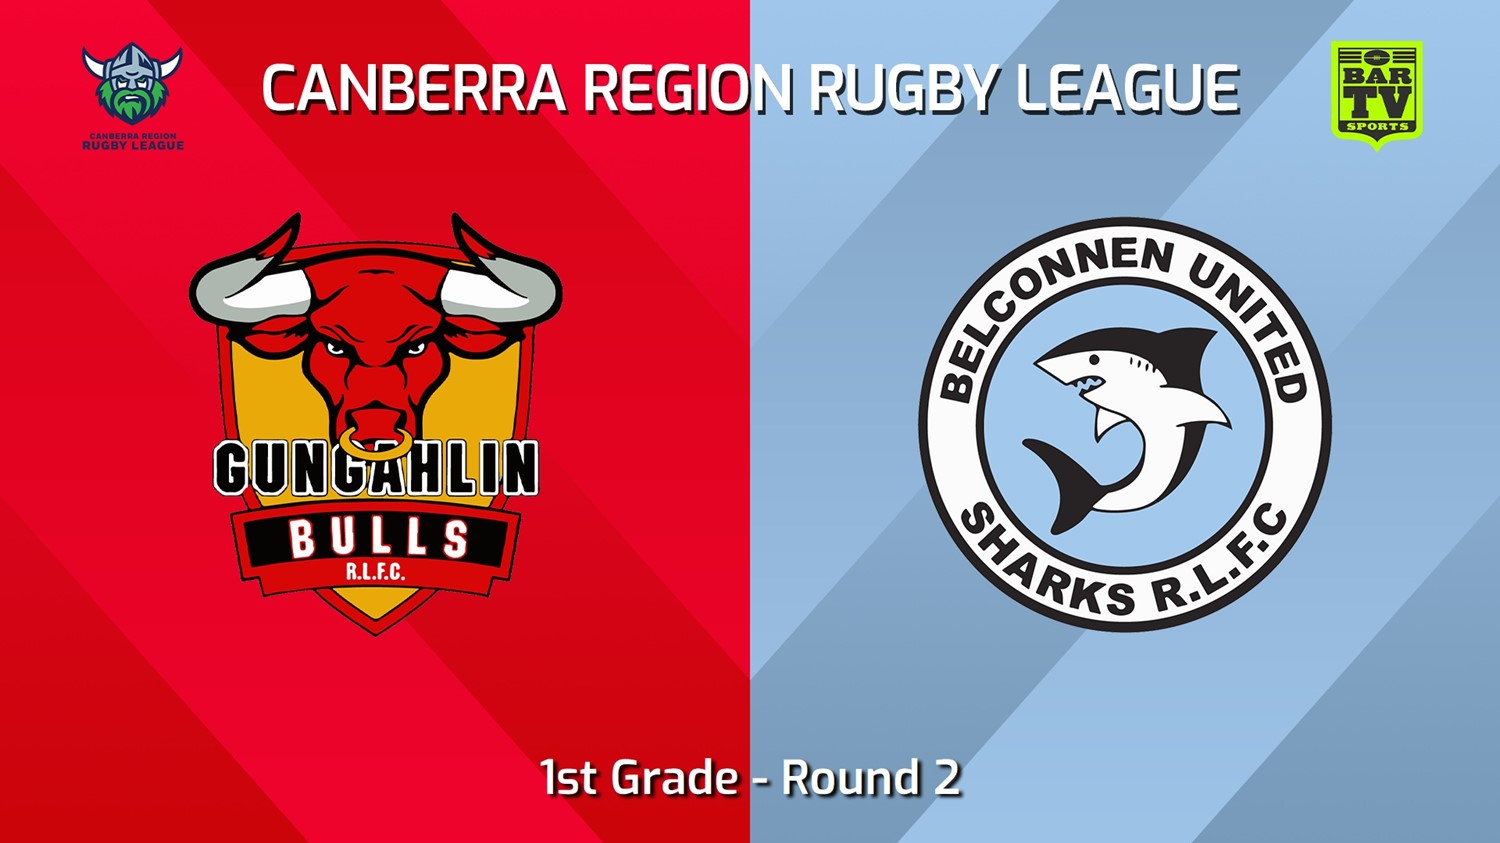 240413-Canberra Round 2 - 1st Grade - Gungahlin Bulls v Belconnen United Sharks Slate Image